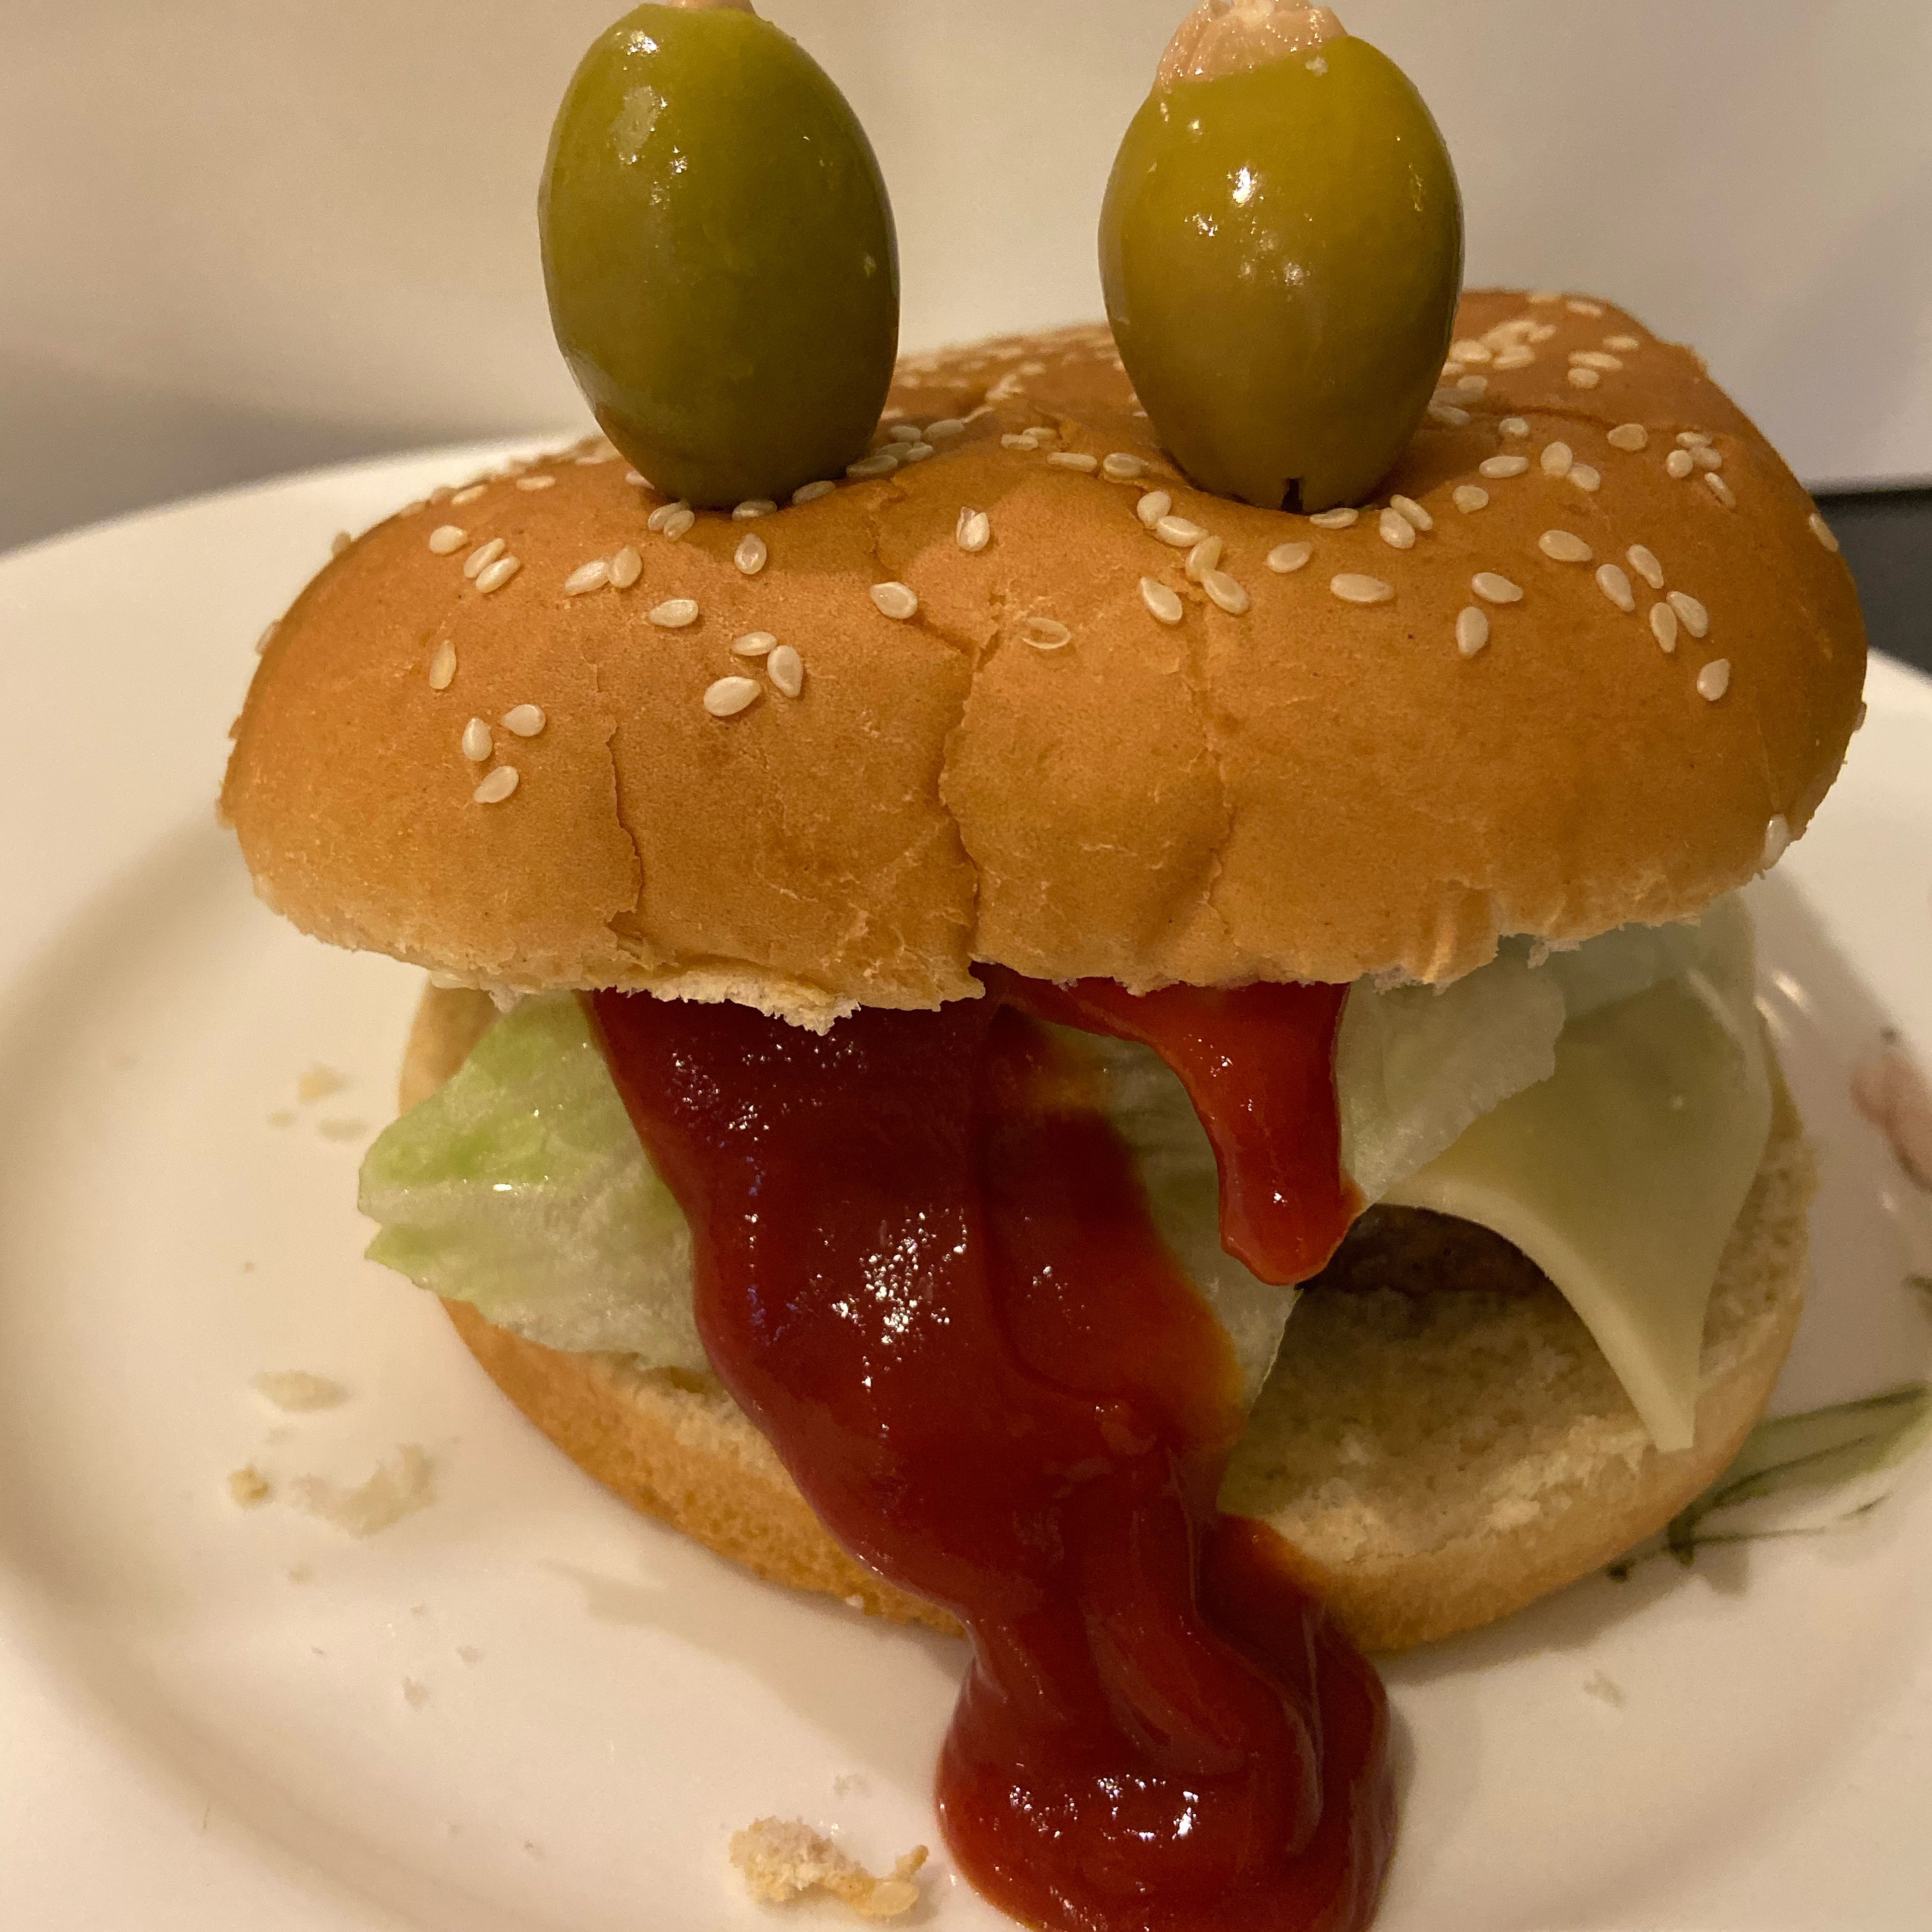 Jedes Burgerbrötchen mit Fleisch, Gemüse und Käse befüllen. Danach jeweils zwei Oliven aufspießen oben auf den Burger spießen. Zum Schluss viel Ketchup oder Burgersoße aus dem Burger herauslaufen lassen.